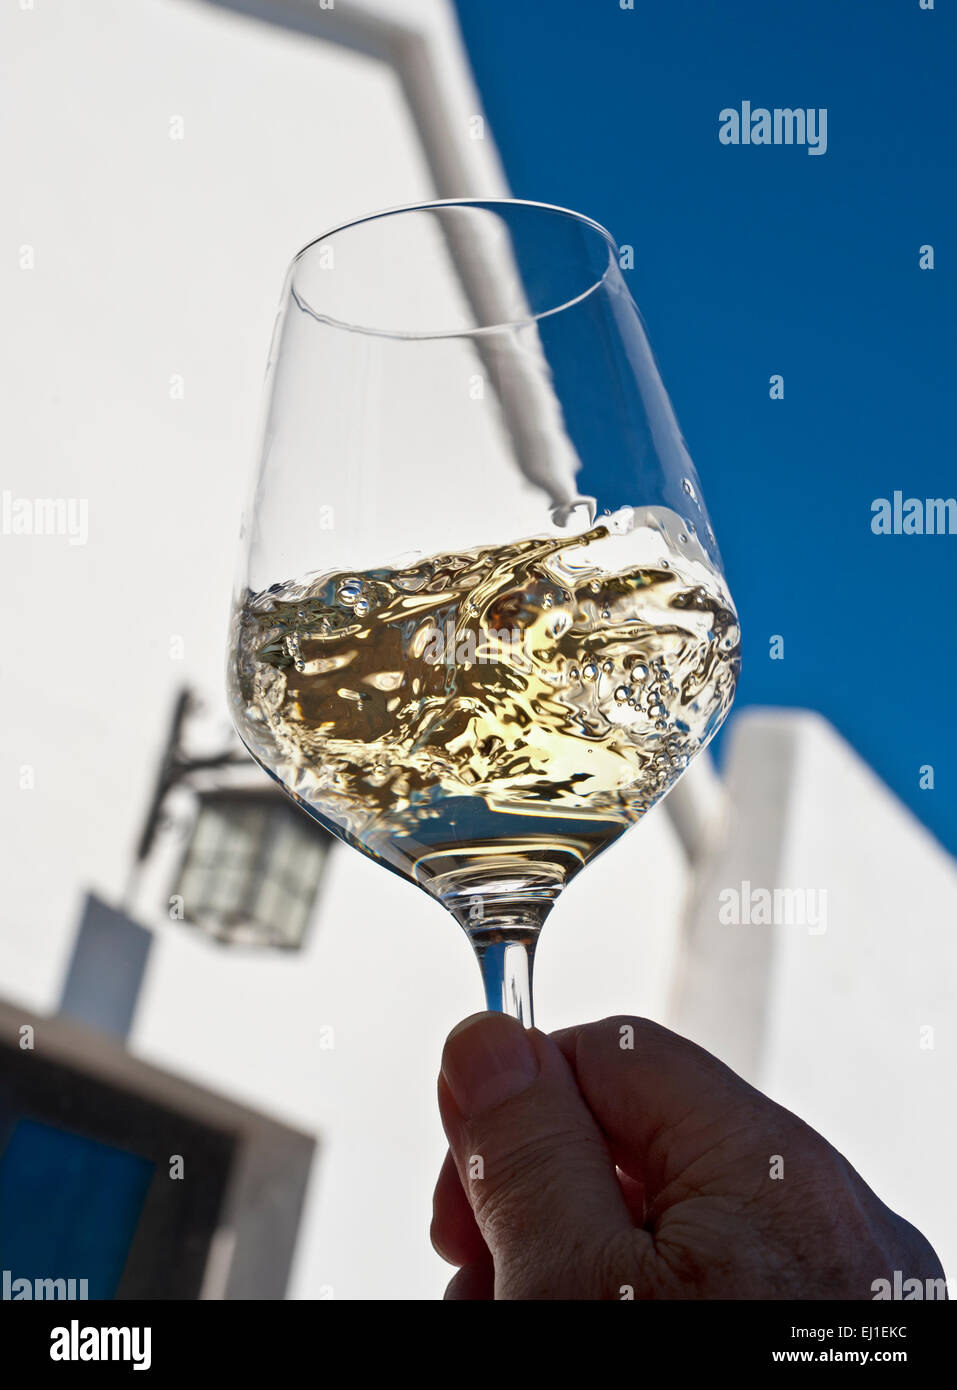 WEISSWEIN-VERKOSTUNG SONNIGE Alfresco wirbeln belüften und Bewertung eines Glases Weißwein im Freien unter freiem Himmel sonnige Weinprobe Situation Stockfoto